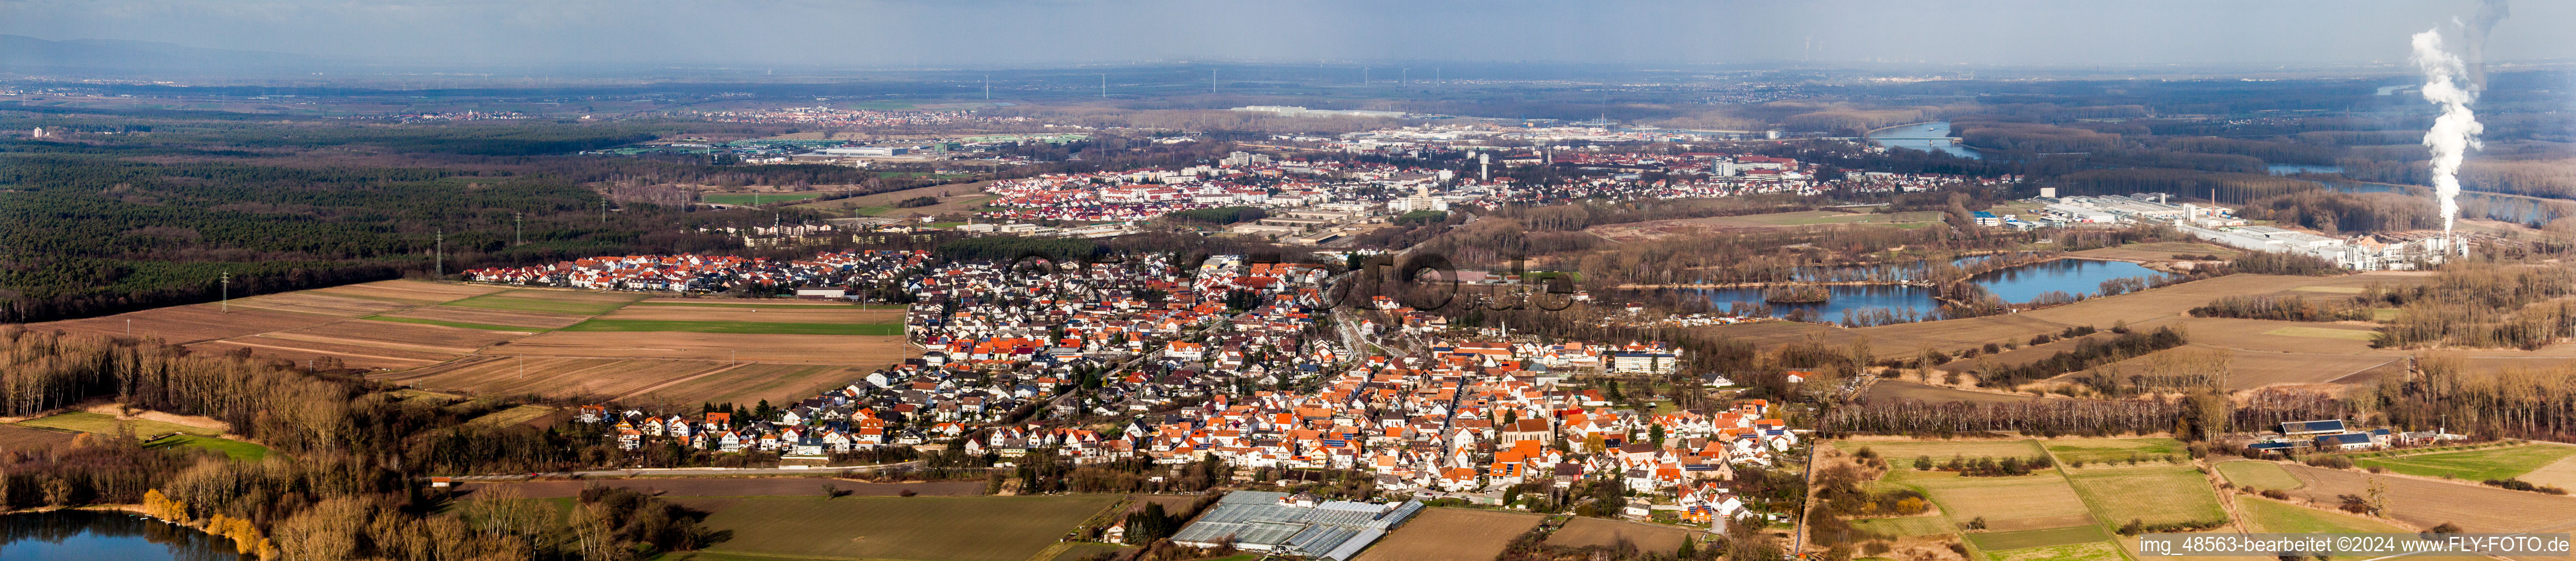 Vue aérienne de Panorama - vue en perspective des rues et des maisons des quartiers résidentiels à le quartier Sondernheim in Germersheim dans le département Rhénanie-Palatinat, Allemagne